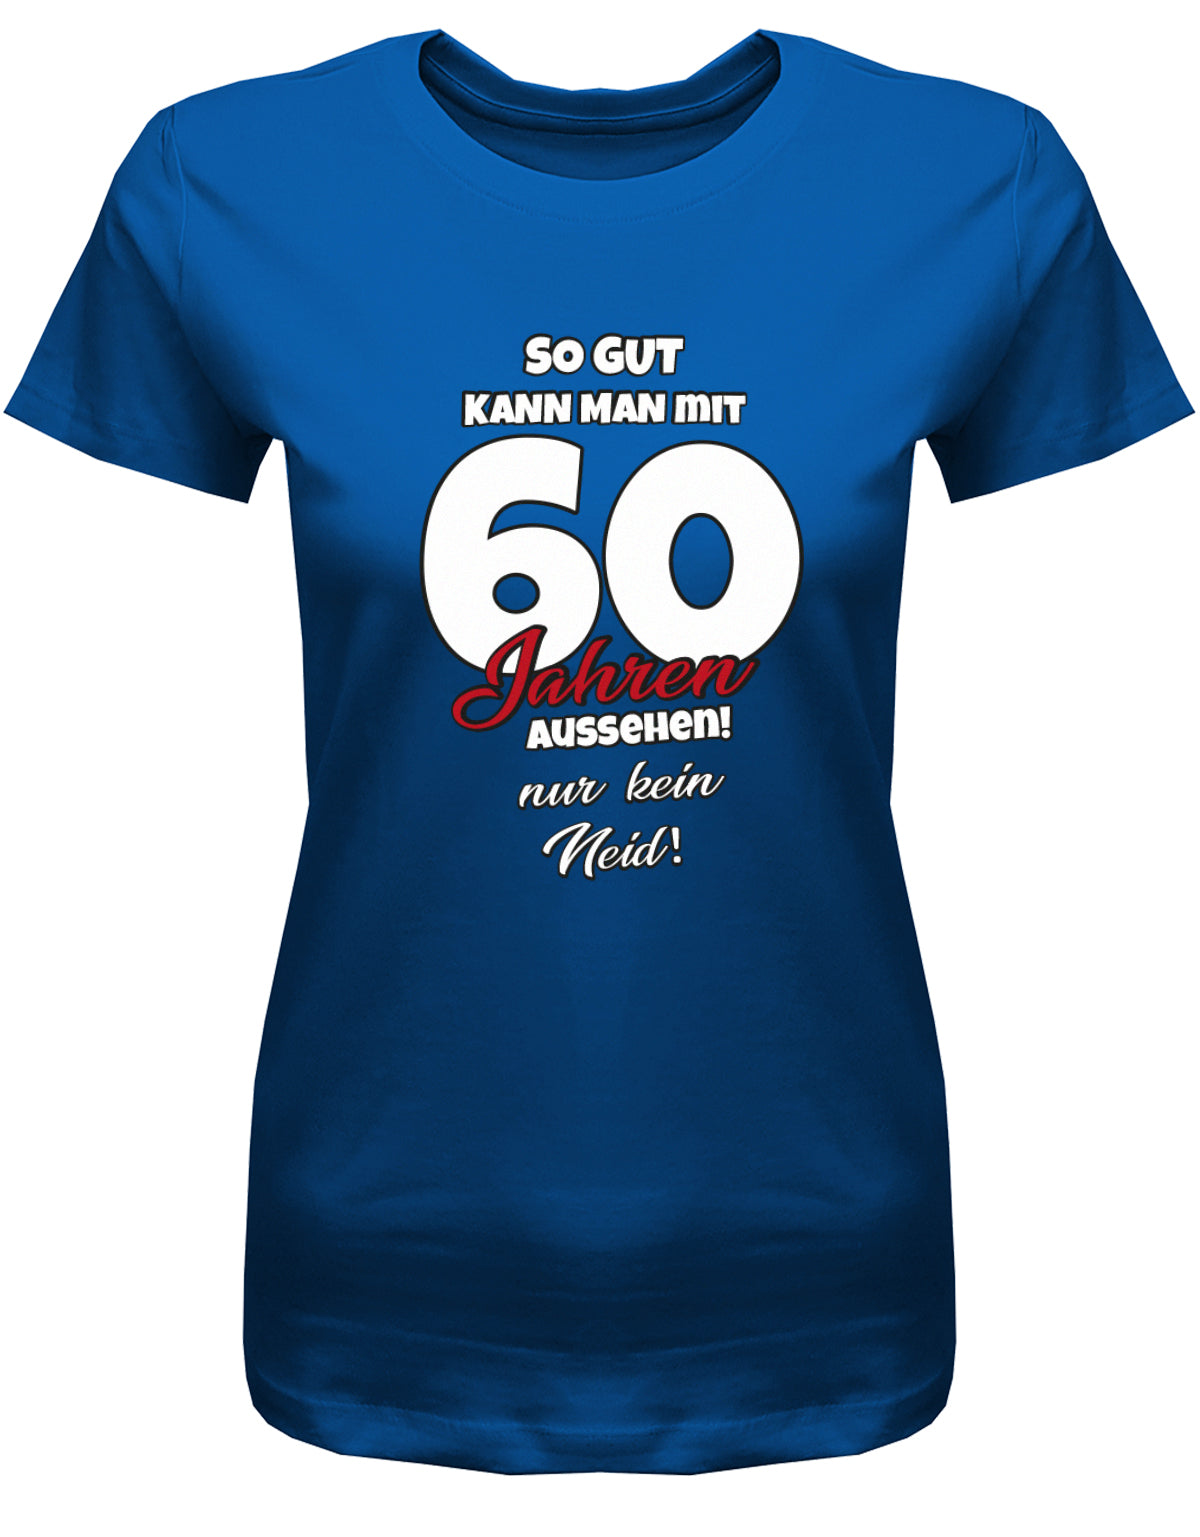 Lustiges T-Shirt zum 60 Geburtstag für die Frau Bedruckt mit So gut kann man mit 60 Jahren aussehen! Nur kein Neid! Royalblau